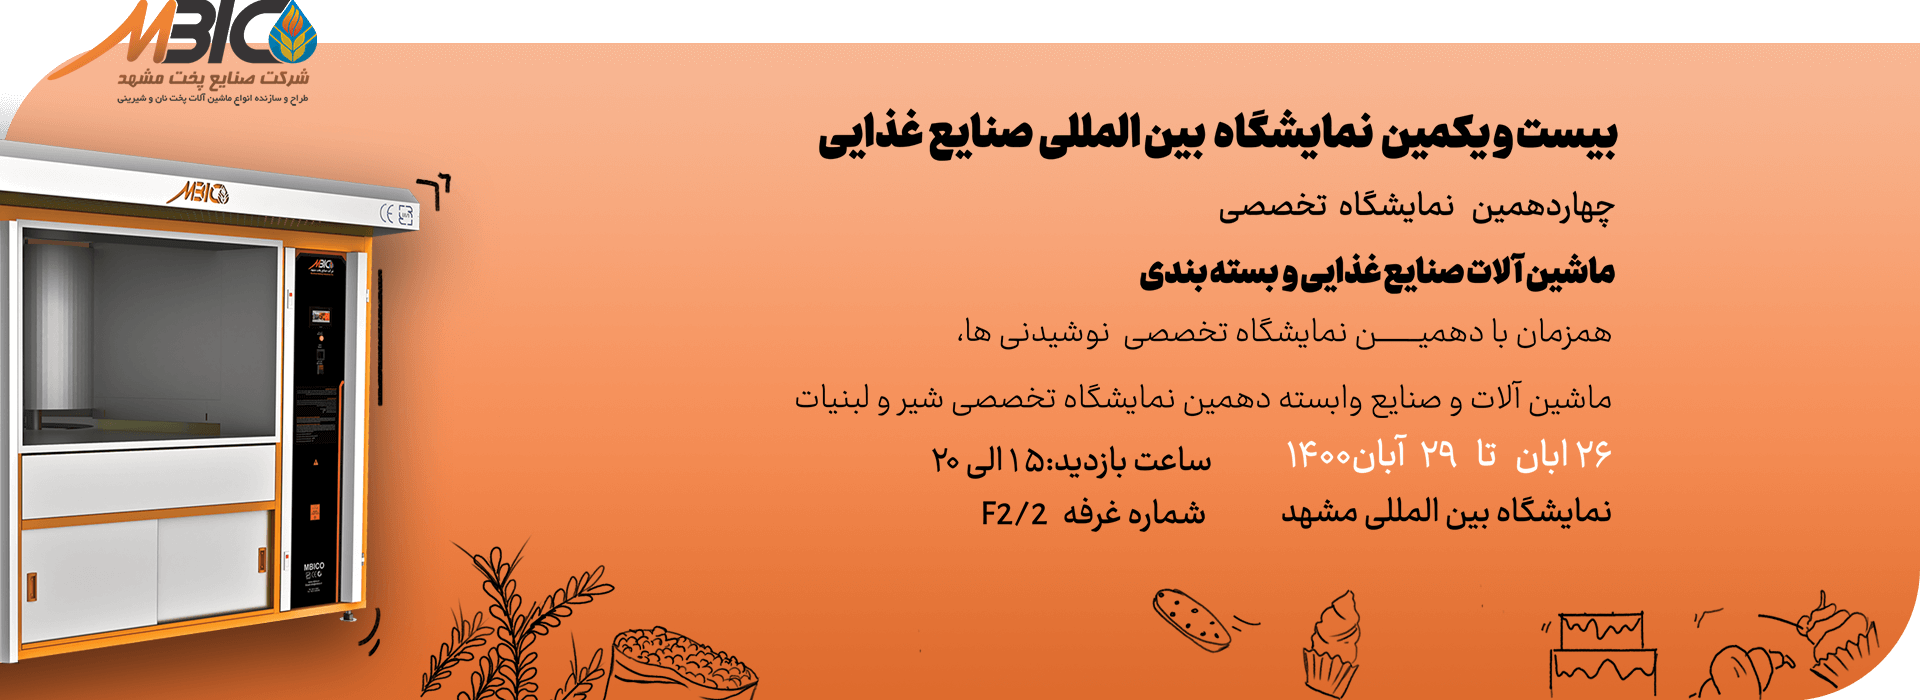 حصور صنایع پخت در بیست و یکمین نمایشگاه ifood